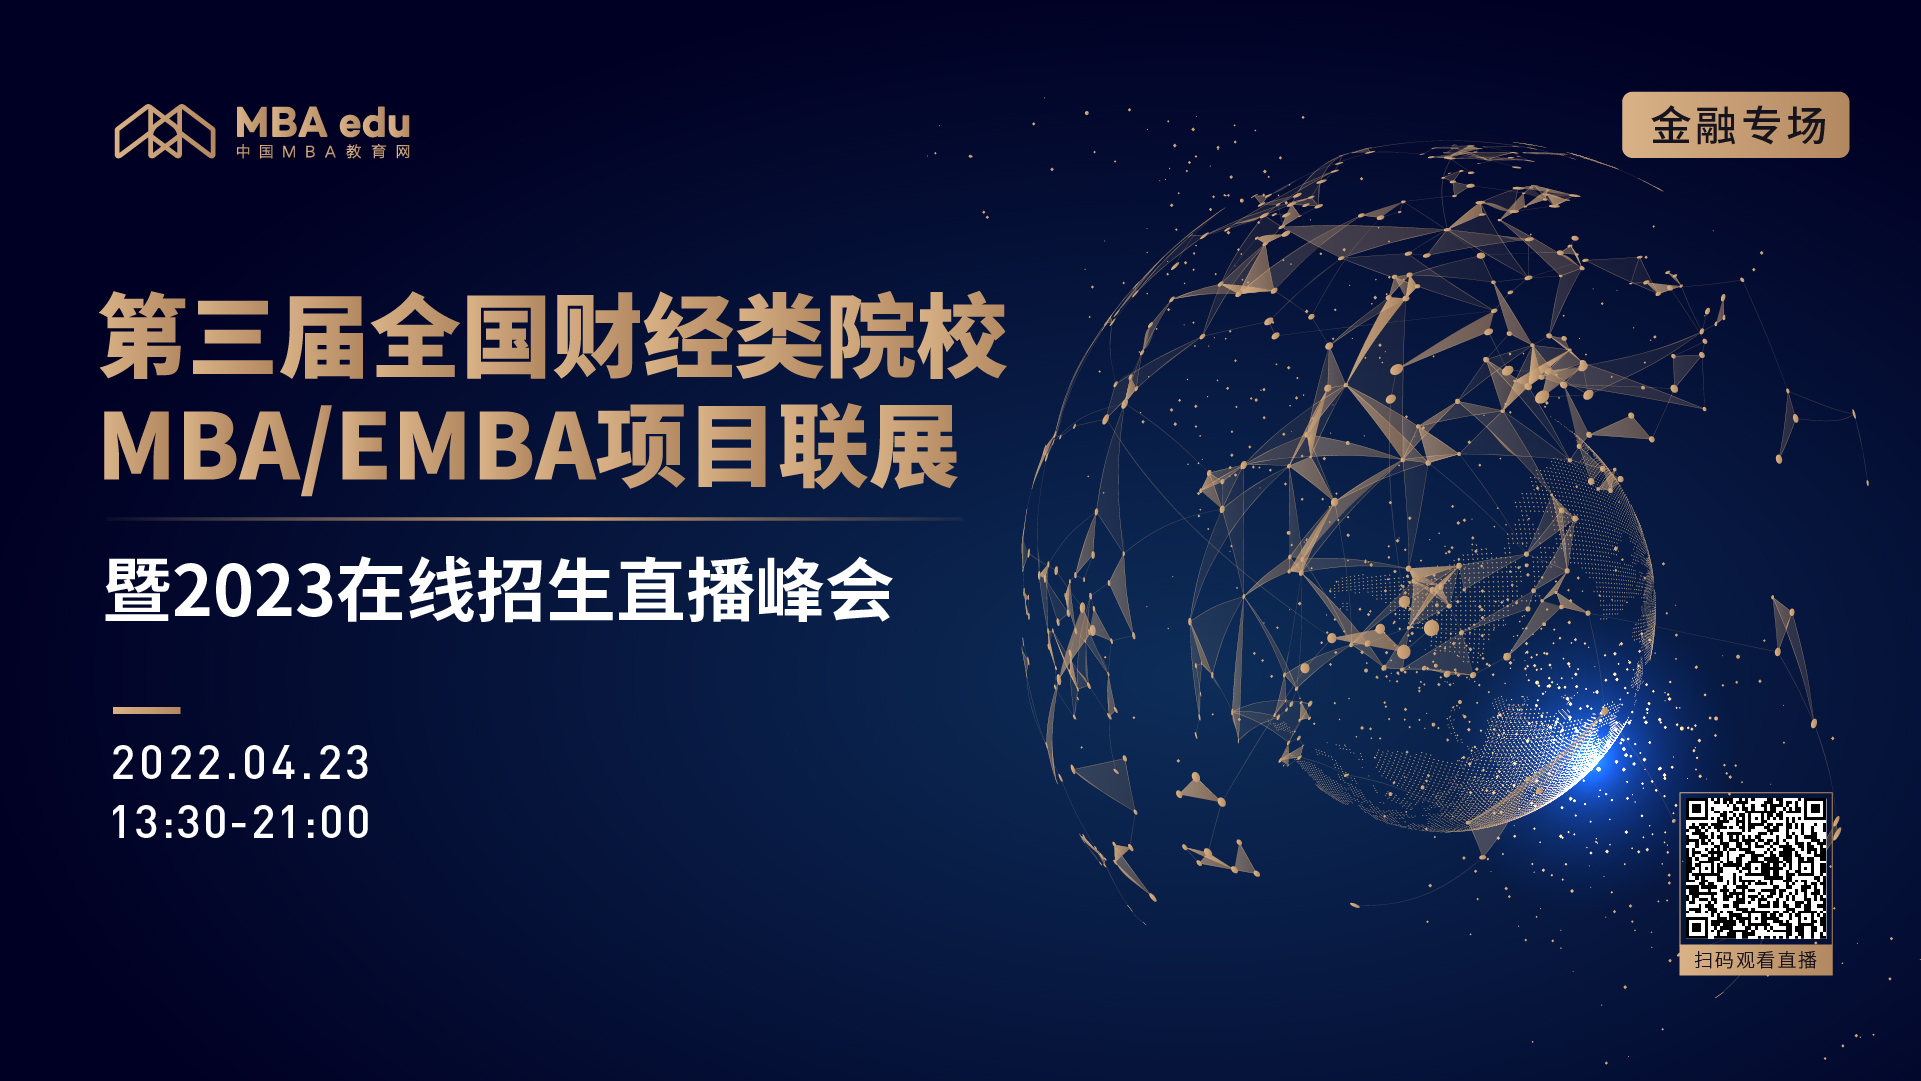 安徽财经大学MBA教育中心邀你参加第三届全国财经类院校MBA/EMBA项目联展